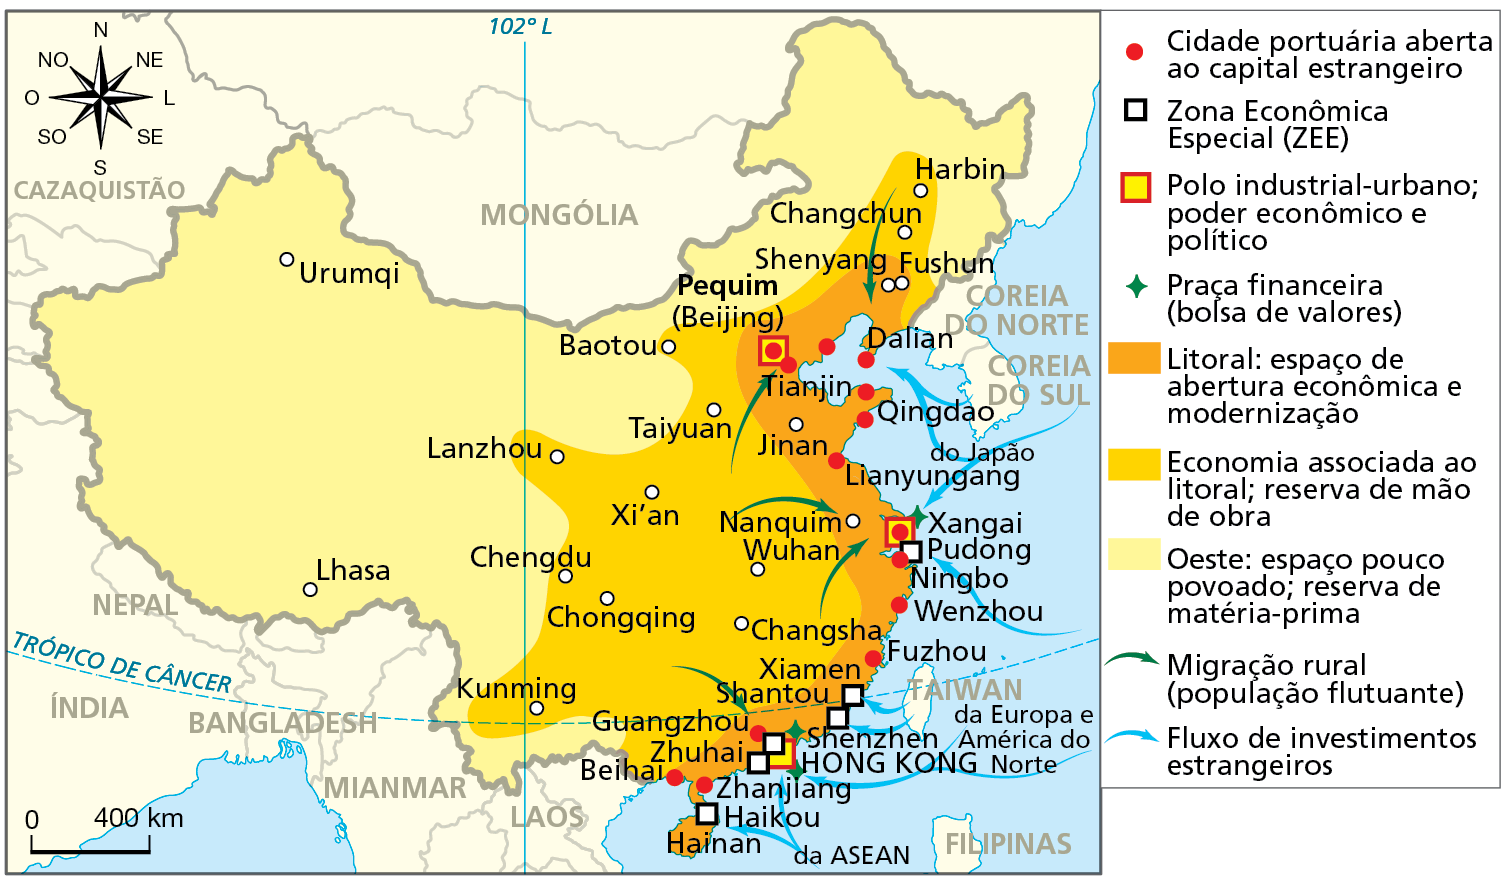 Mapa. China: características econômicas de seu espaço geográfico - 2019. Mapa mostrando a organização do espaço econômico chinês.
Cidade portuária aberta ao capital estrangeiro (representadas por um círculo vermelho): cidades situadas ao longo da faixa litorânea, destacando as cidades de Dalian, Pequim (Beijing), Tianjin, Qingdao, Lianyungang, Xangai, Pudong, Wenzhou, Fuzhou, Guangzhou e Beihai.
Zona Econômica Especial (ZEE) (quadro branco): cidades localizadas no litoral da China, com destaque para Pudong, Shantou, Shenzhen, Hong Kong, Zhuhai e Haikou.
Polo industrial-urbano; poder econômico e político (quadrado amarelo): Pequim (Beijing), Xangai e Hong Kong.
Praça financeira (bolsa de valores) (estrela verde): Shenzhen, Xangai e Hong Kong. 
Litoral: espaço de abertura econômica e modernização (cor laranja): faixa litorânea de norte a sul, ao longo da costa chinesa.
Economia associada ao litoral; reserva de matéria-prima (cor amarelo escuro): porção centro-leste e parte do nordeste, à esquerda da faixa litorânea. 
Oeste: espaço pouco povoado; reserva de matéria-prima (cor amarelo claro): extensa faixa de terras à oeste, ao norte e no extremo nordeste. 
Migração rural (população flutuante) (setas verdes): direcionadas a partir das áreas de economia associada ao litoral.  
Fluxo de investimentos estrangeiro (setas zuis): direcionadas a partir do oceano para as cidades da costa do país; investimentos originários, principalmente, do Japão, Europa, América do Norte e Asean. 
À esquerda, na parte de cima, a rosa dos ventos, e abaixo, a escala de 0 a 400 quilômetros.